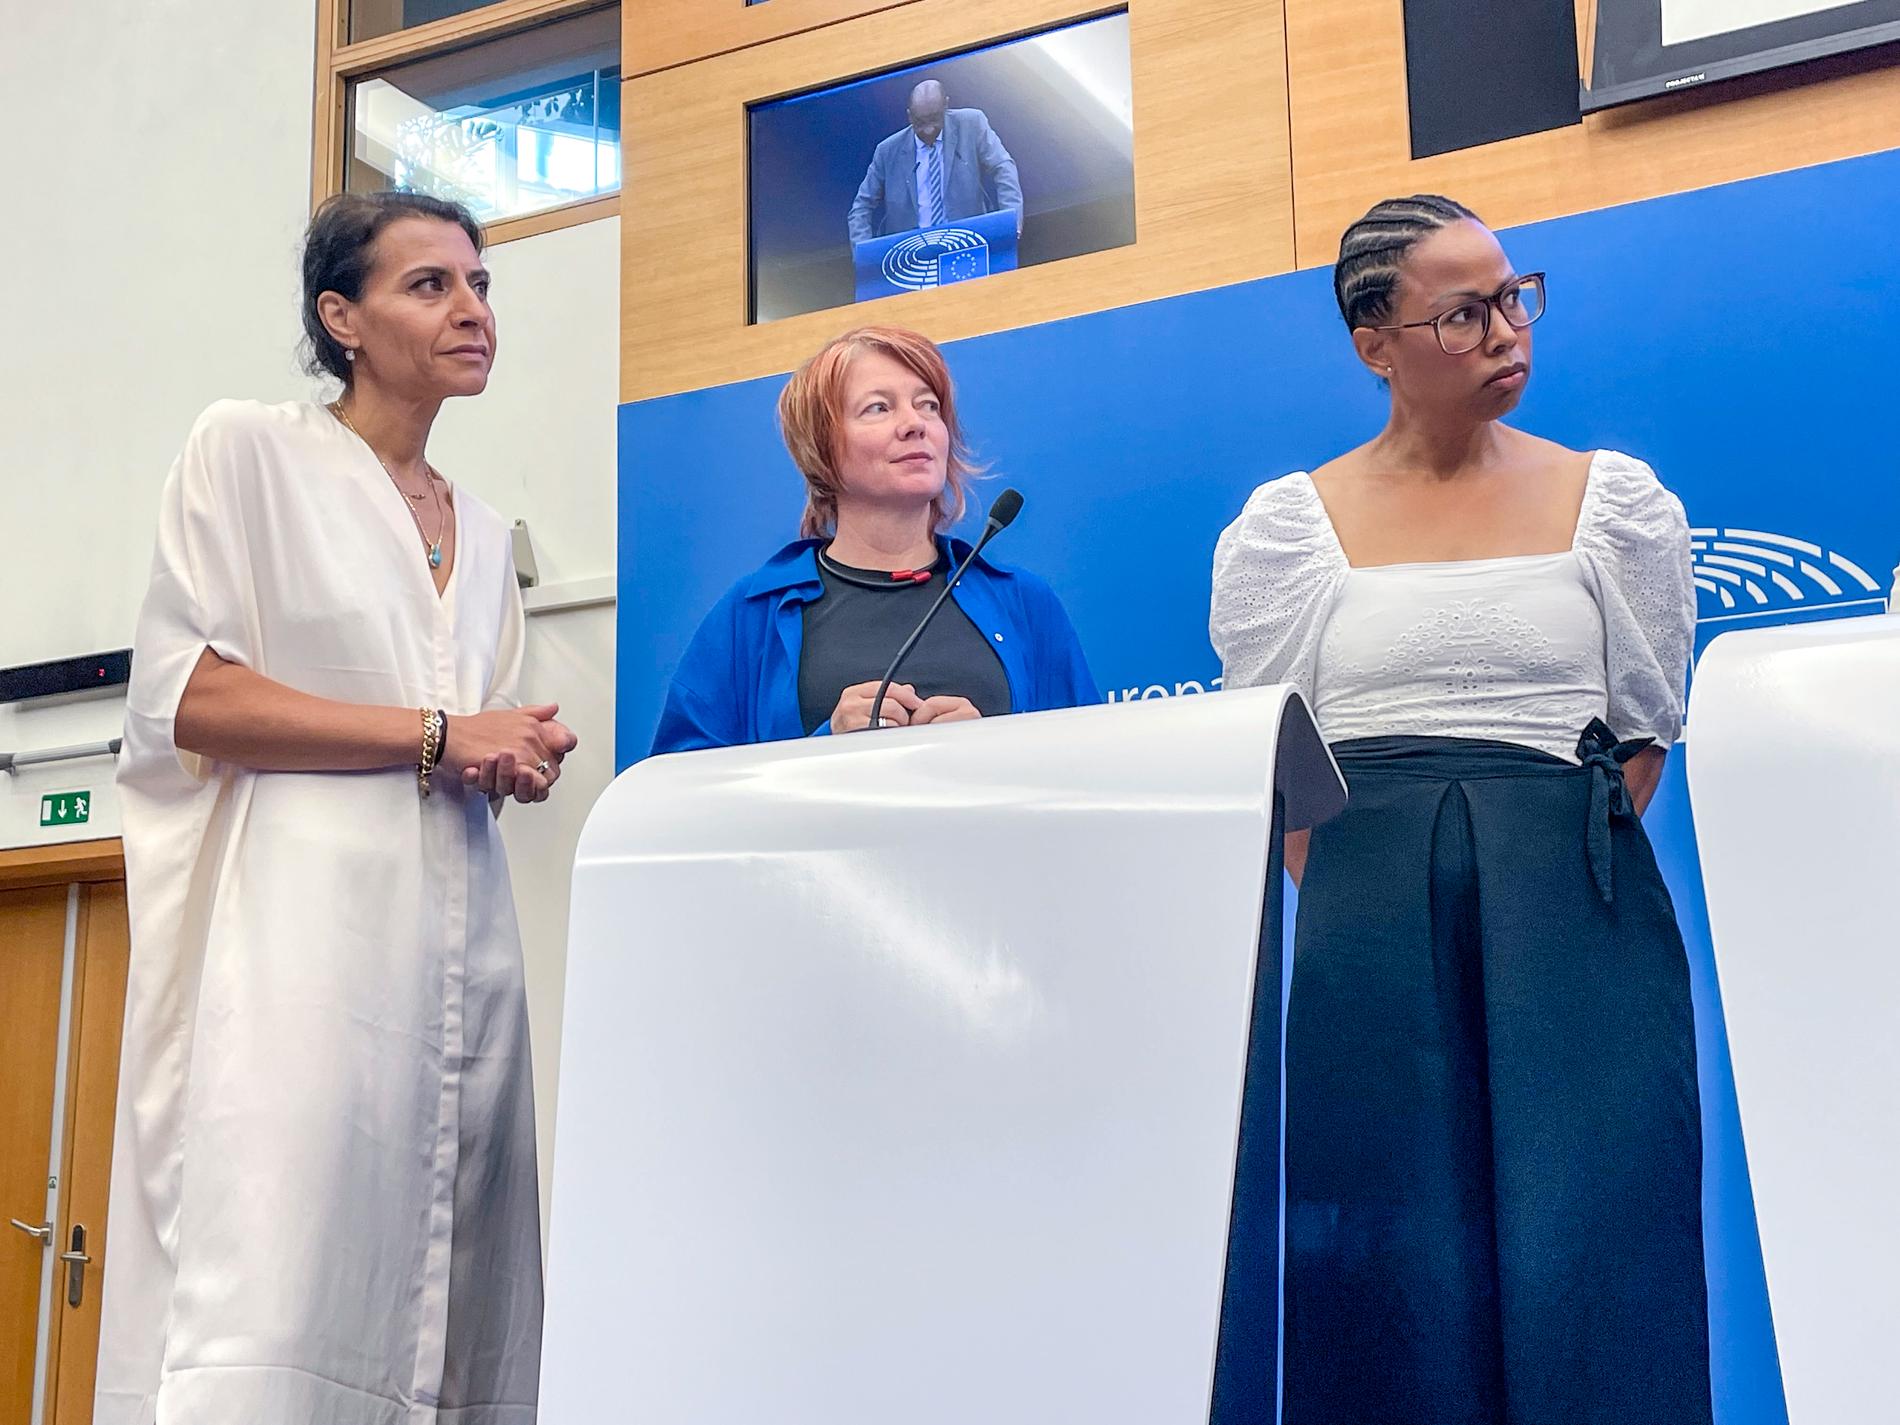 Svenska EU-parlamentsledamöterna Abir Al-Sahlani (C), Malin Björk (V) och Alice Bah-Kuhnke (MP) lyssnar på vittnesmål om prostitutionen på en presskonferens i Strasbourg.